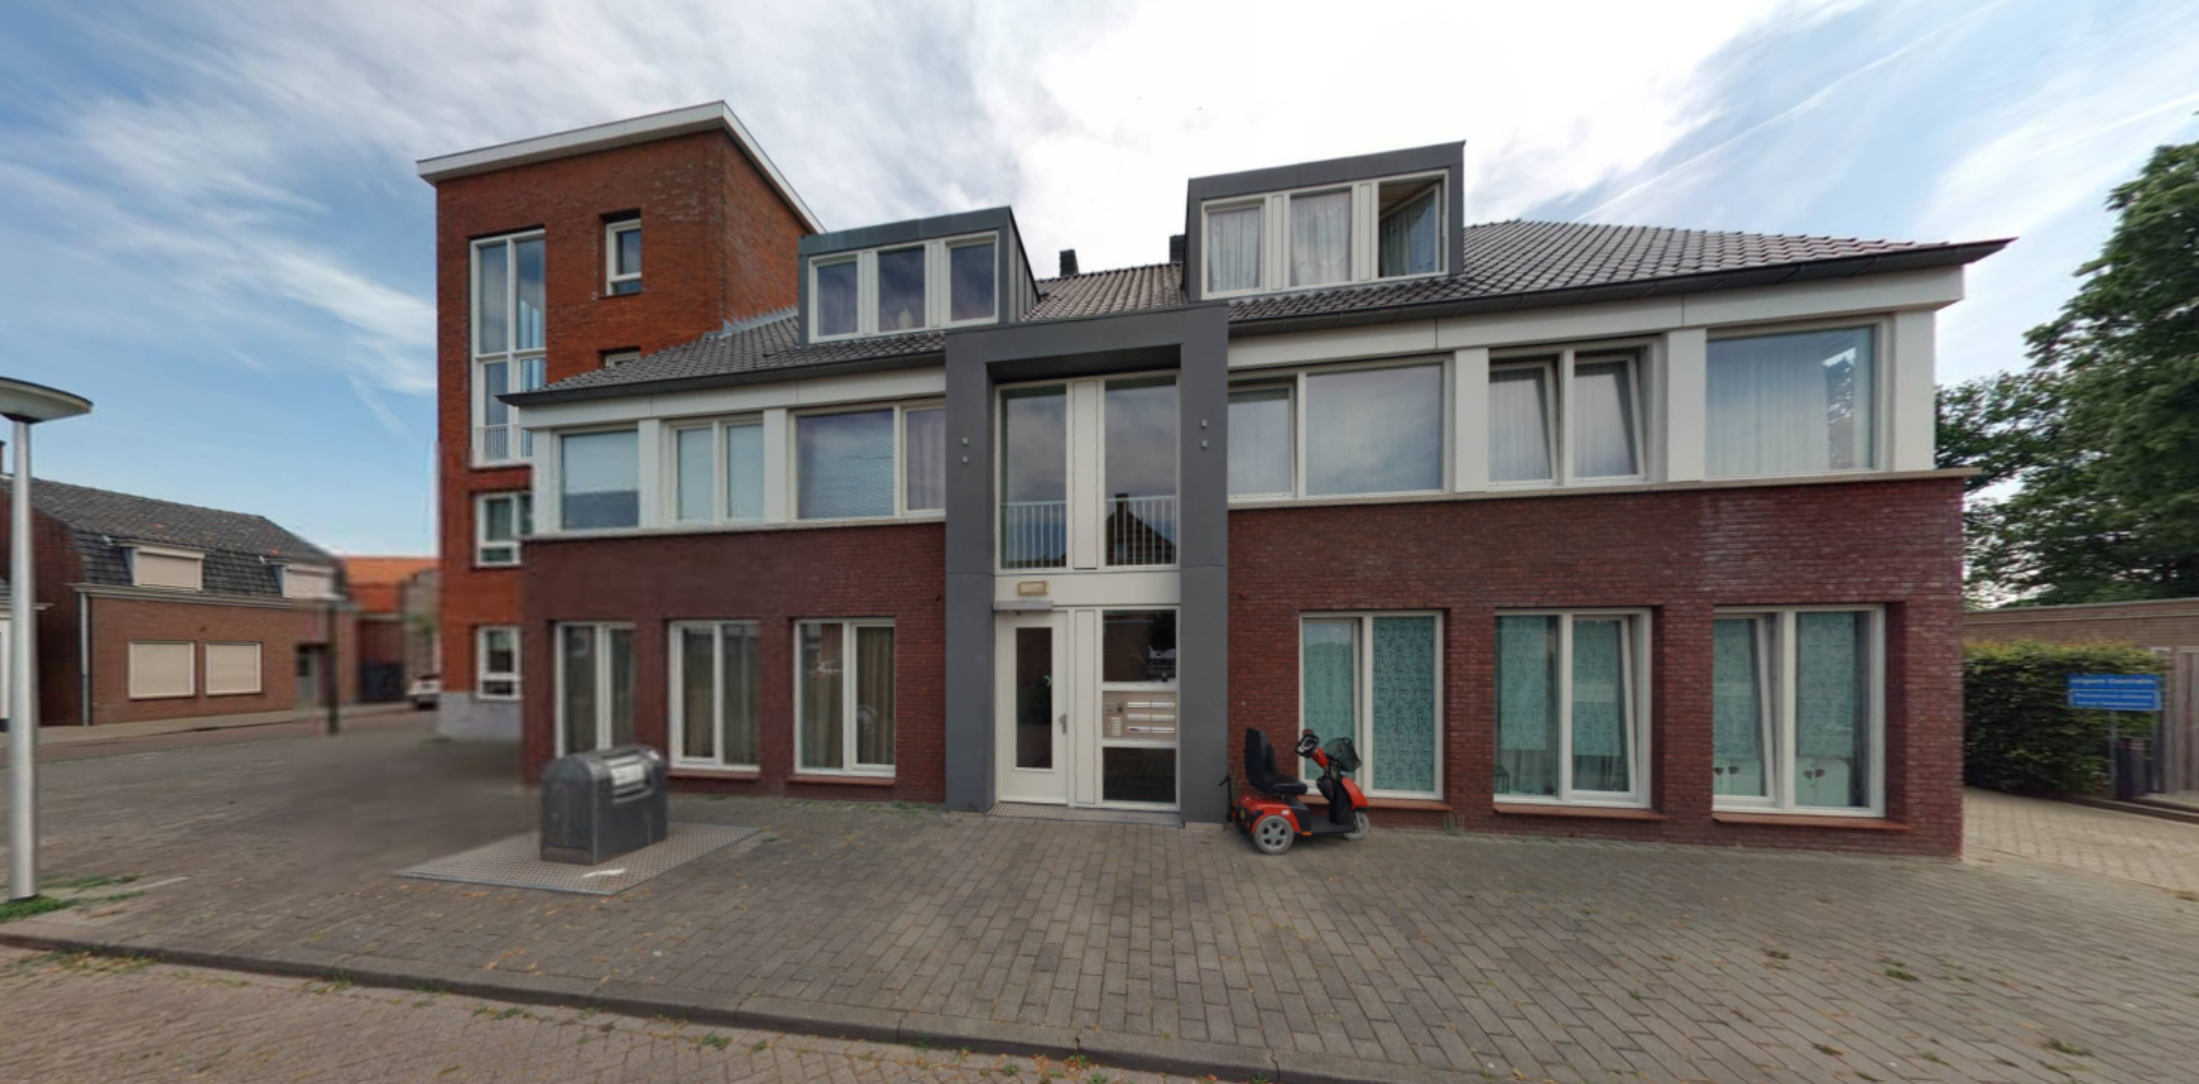 Dorpsstraat 25, 4641 HV Ossendrecht, Nederland